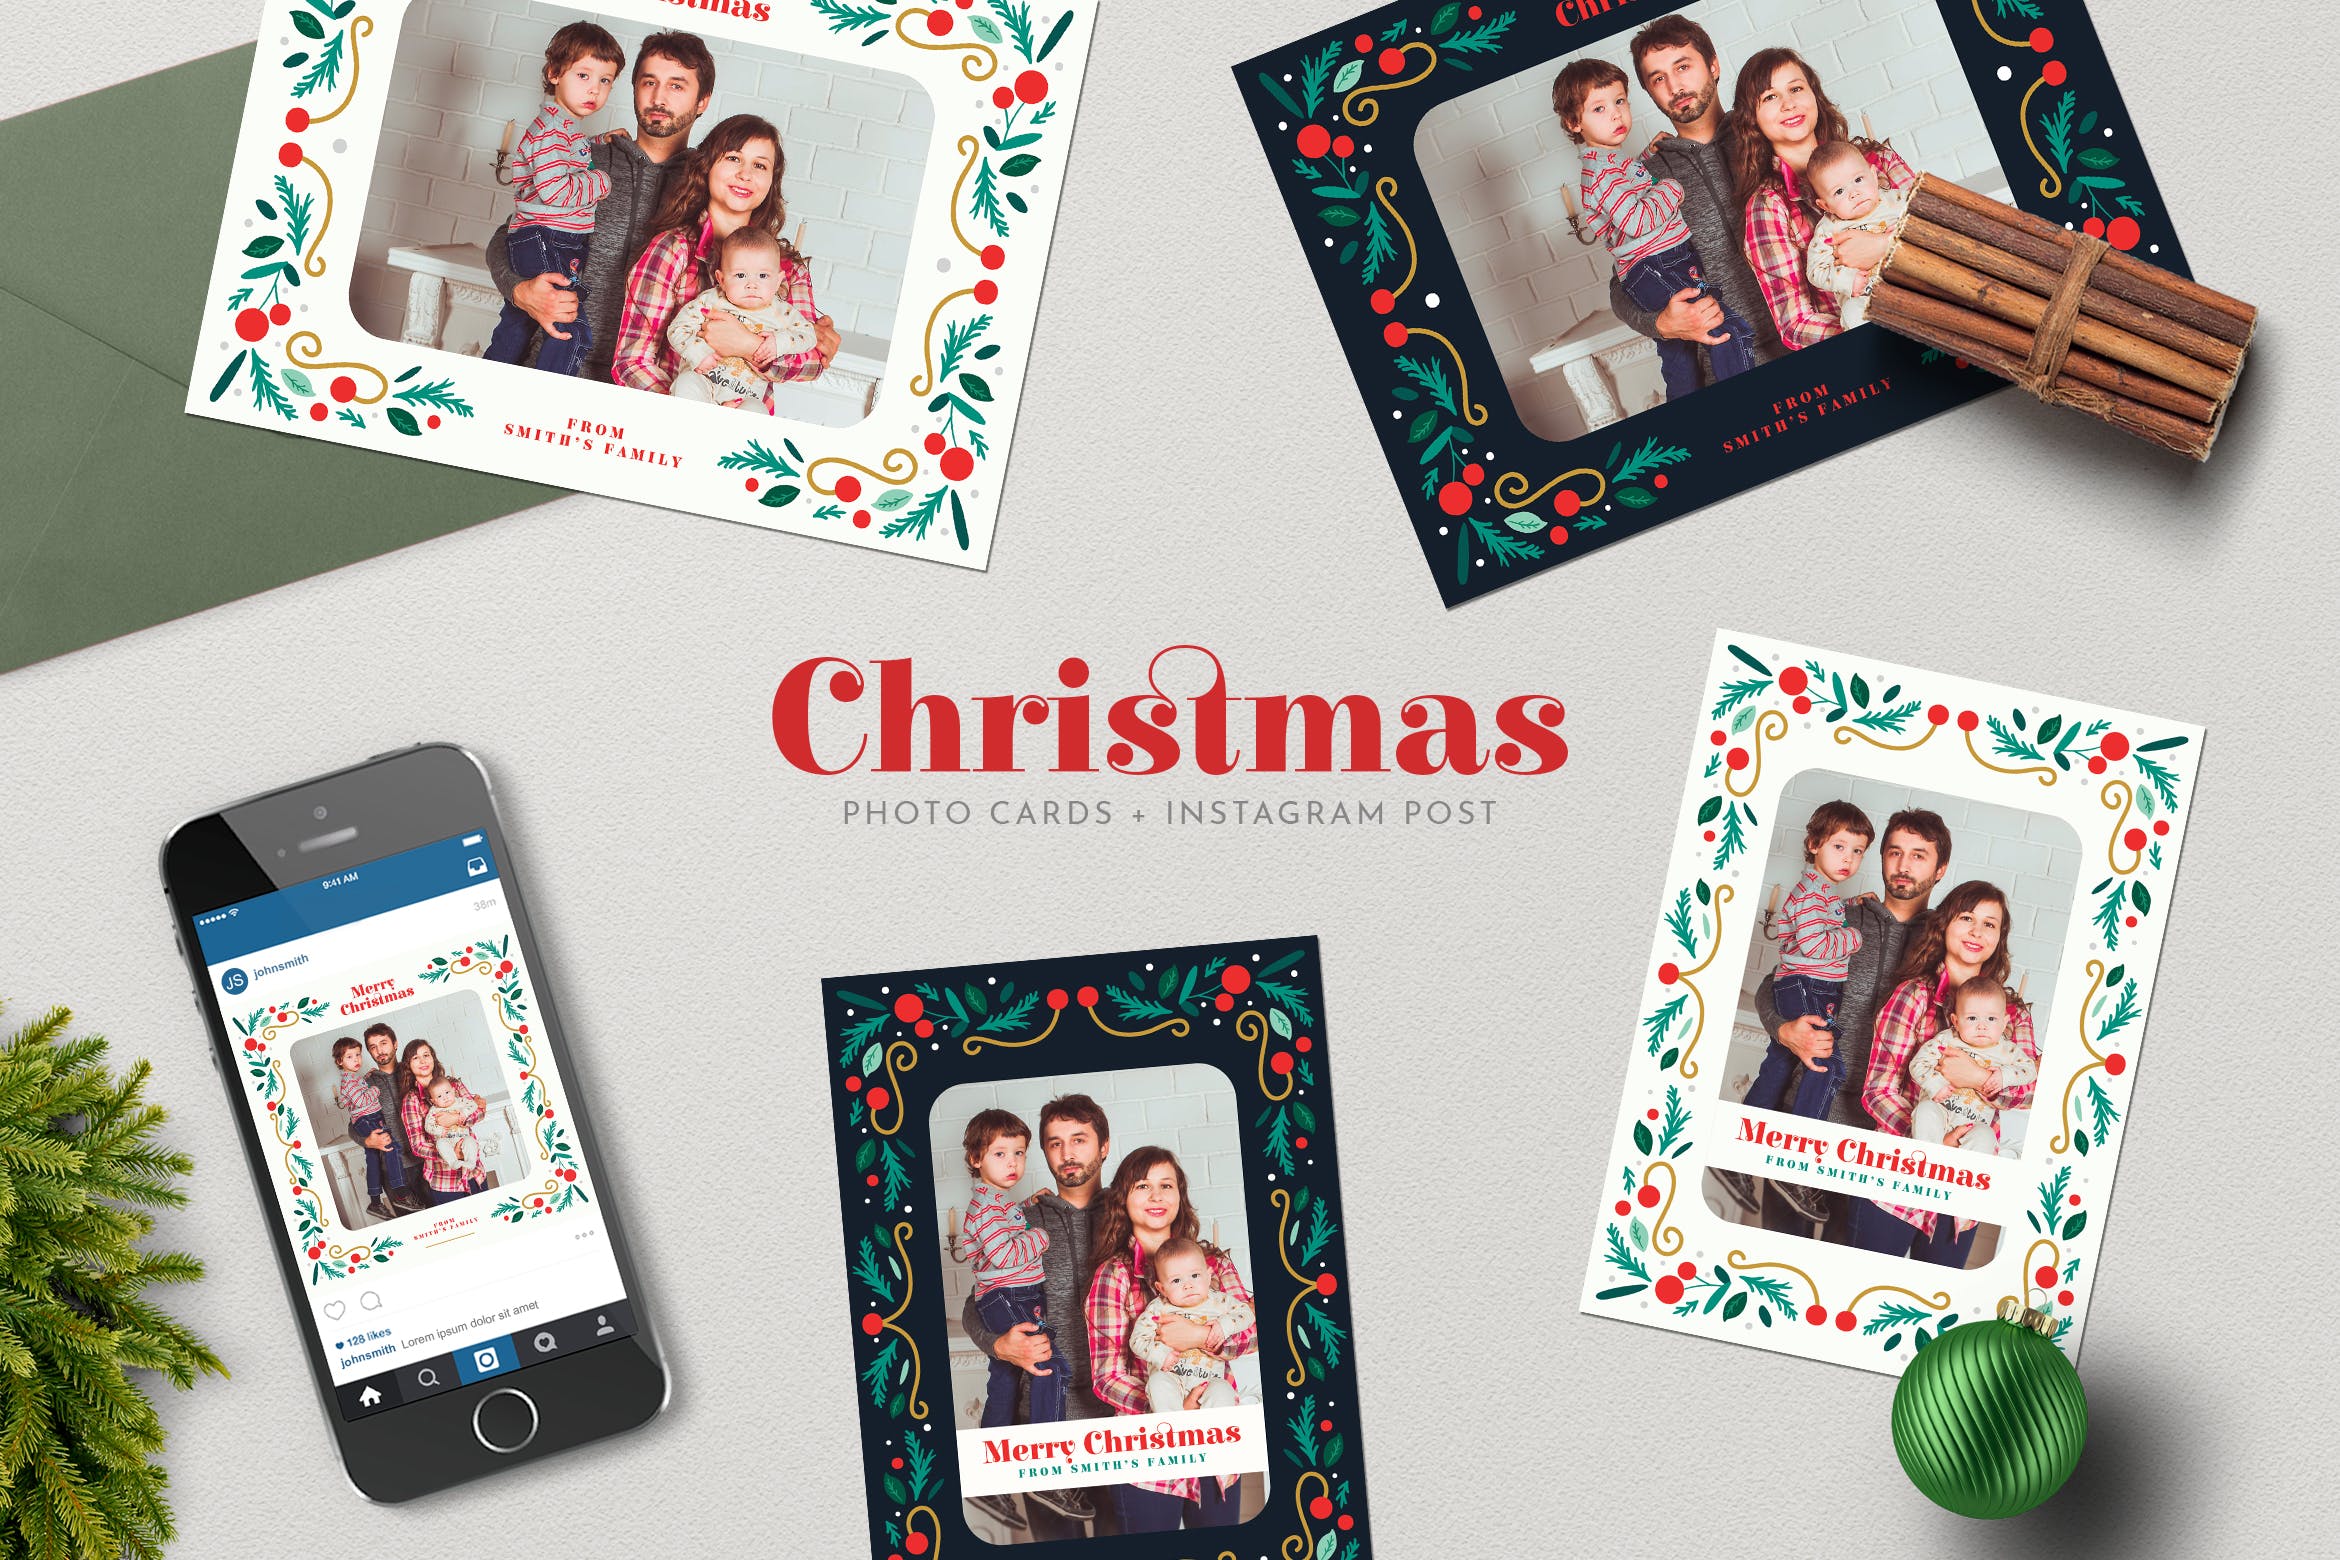 圣诞节照片明信片&Instagram贴图设计模板非凡图库精选 Christmas PhotoCards +Instagram Post插图